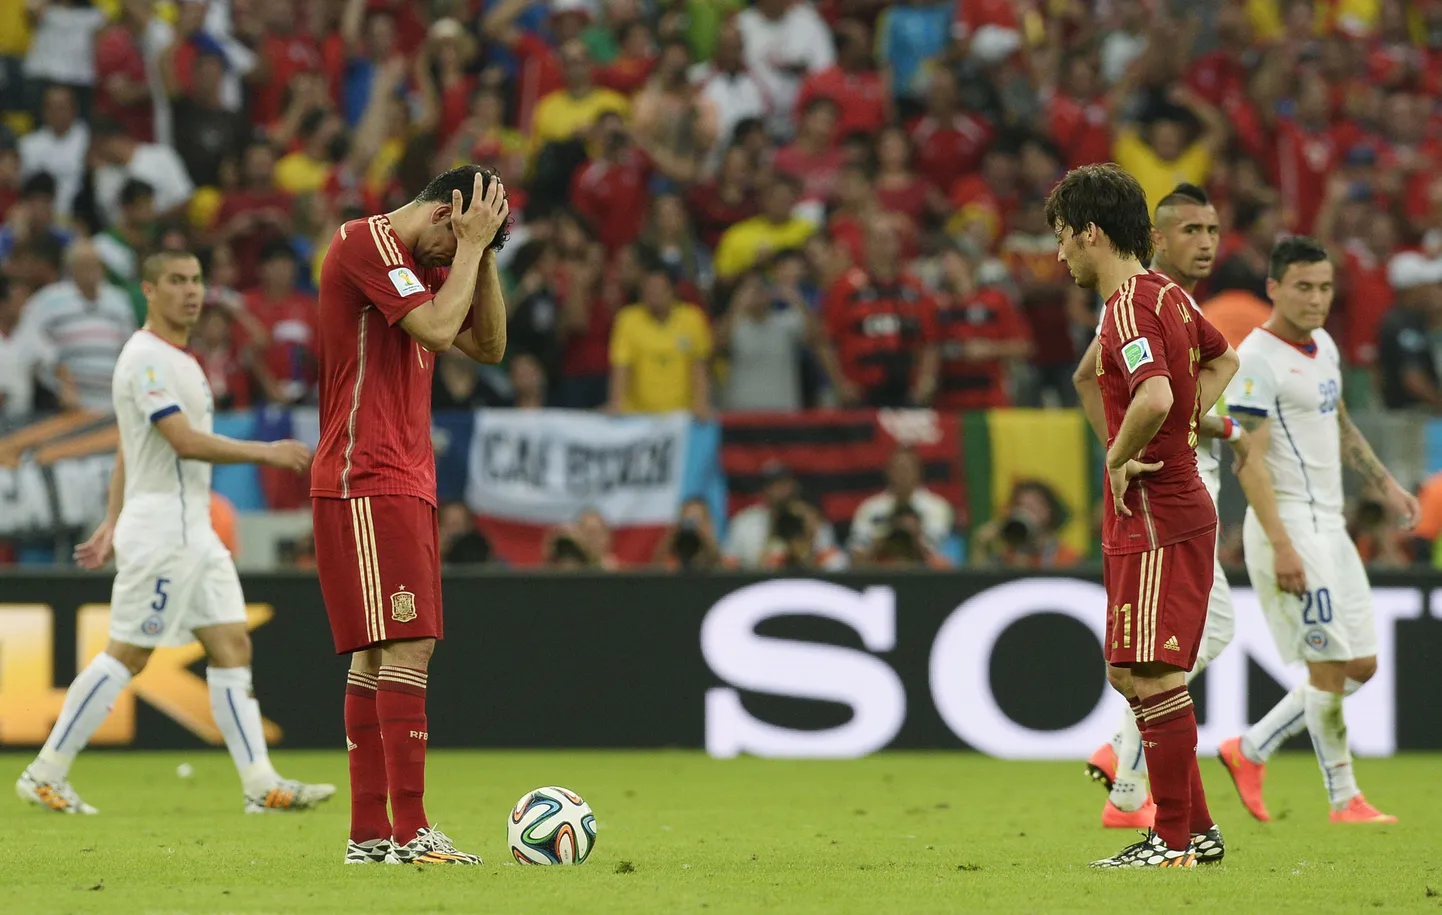 Момент матча Испания - Чили.